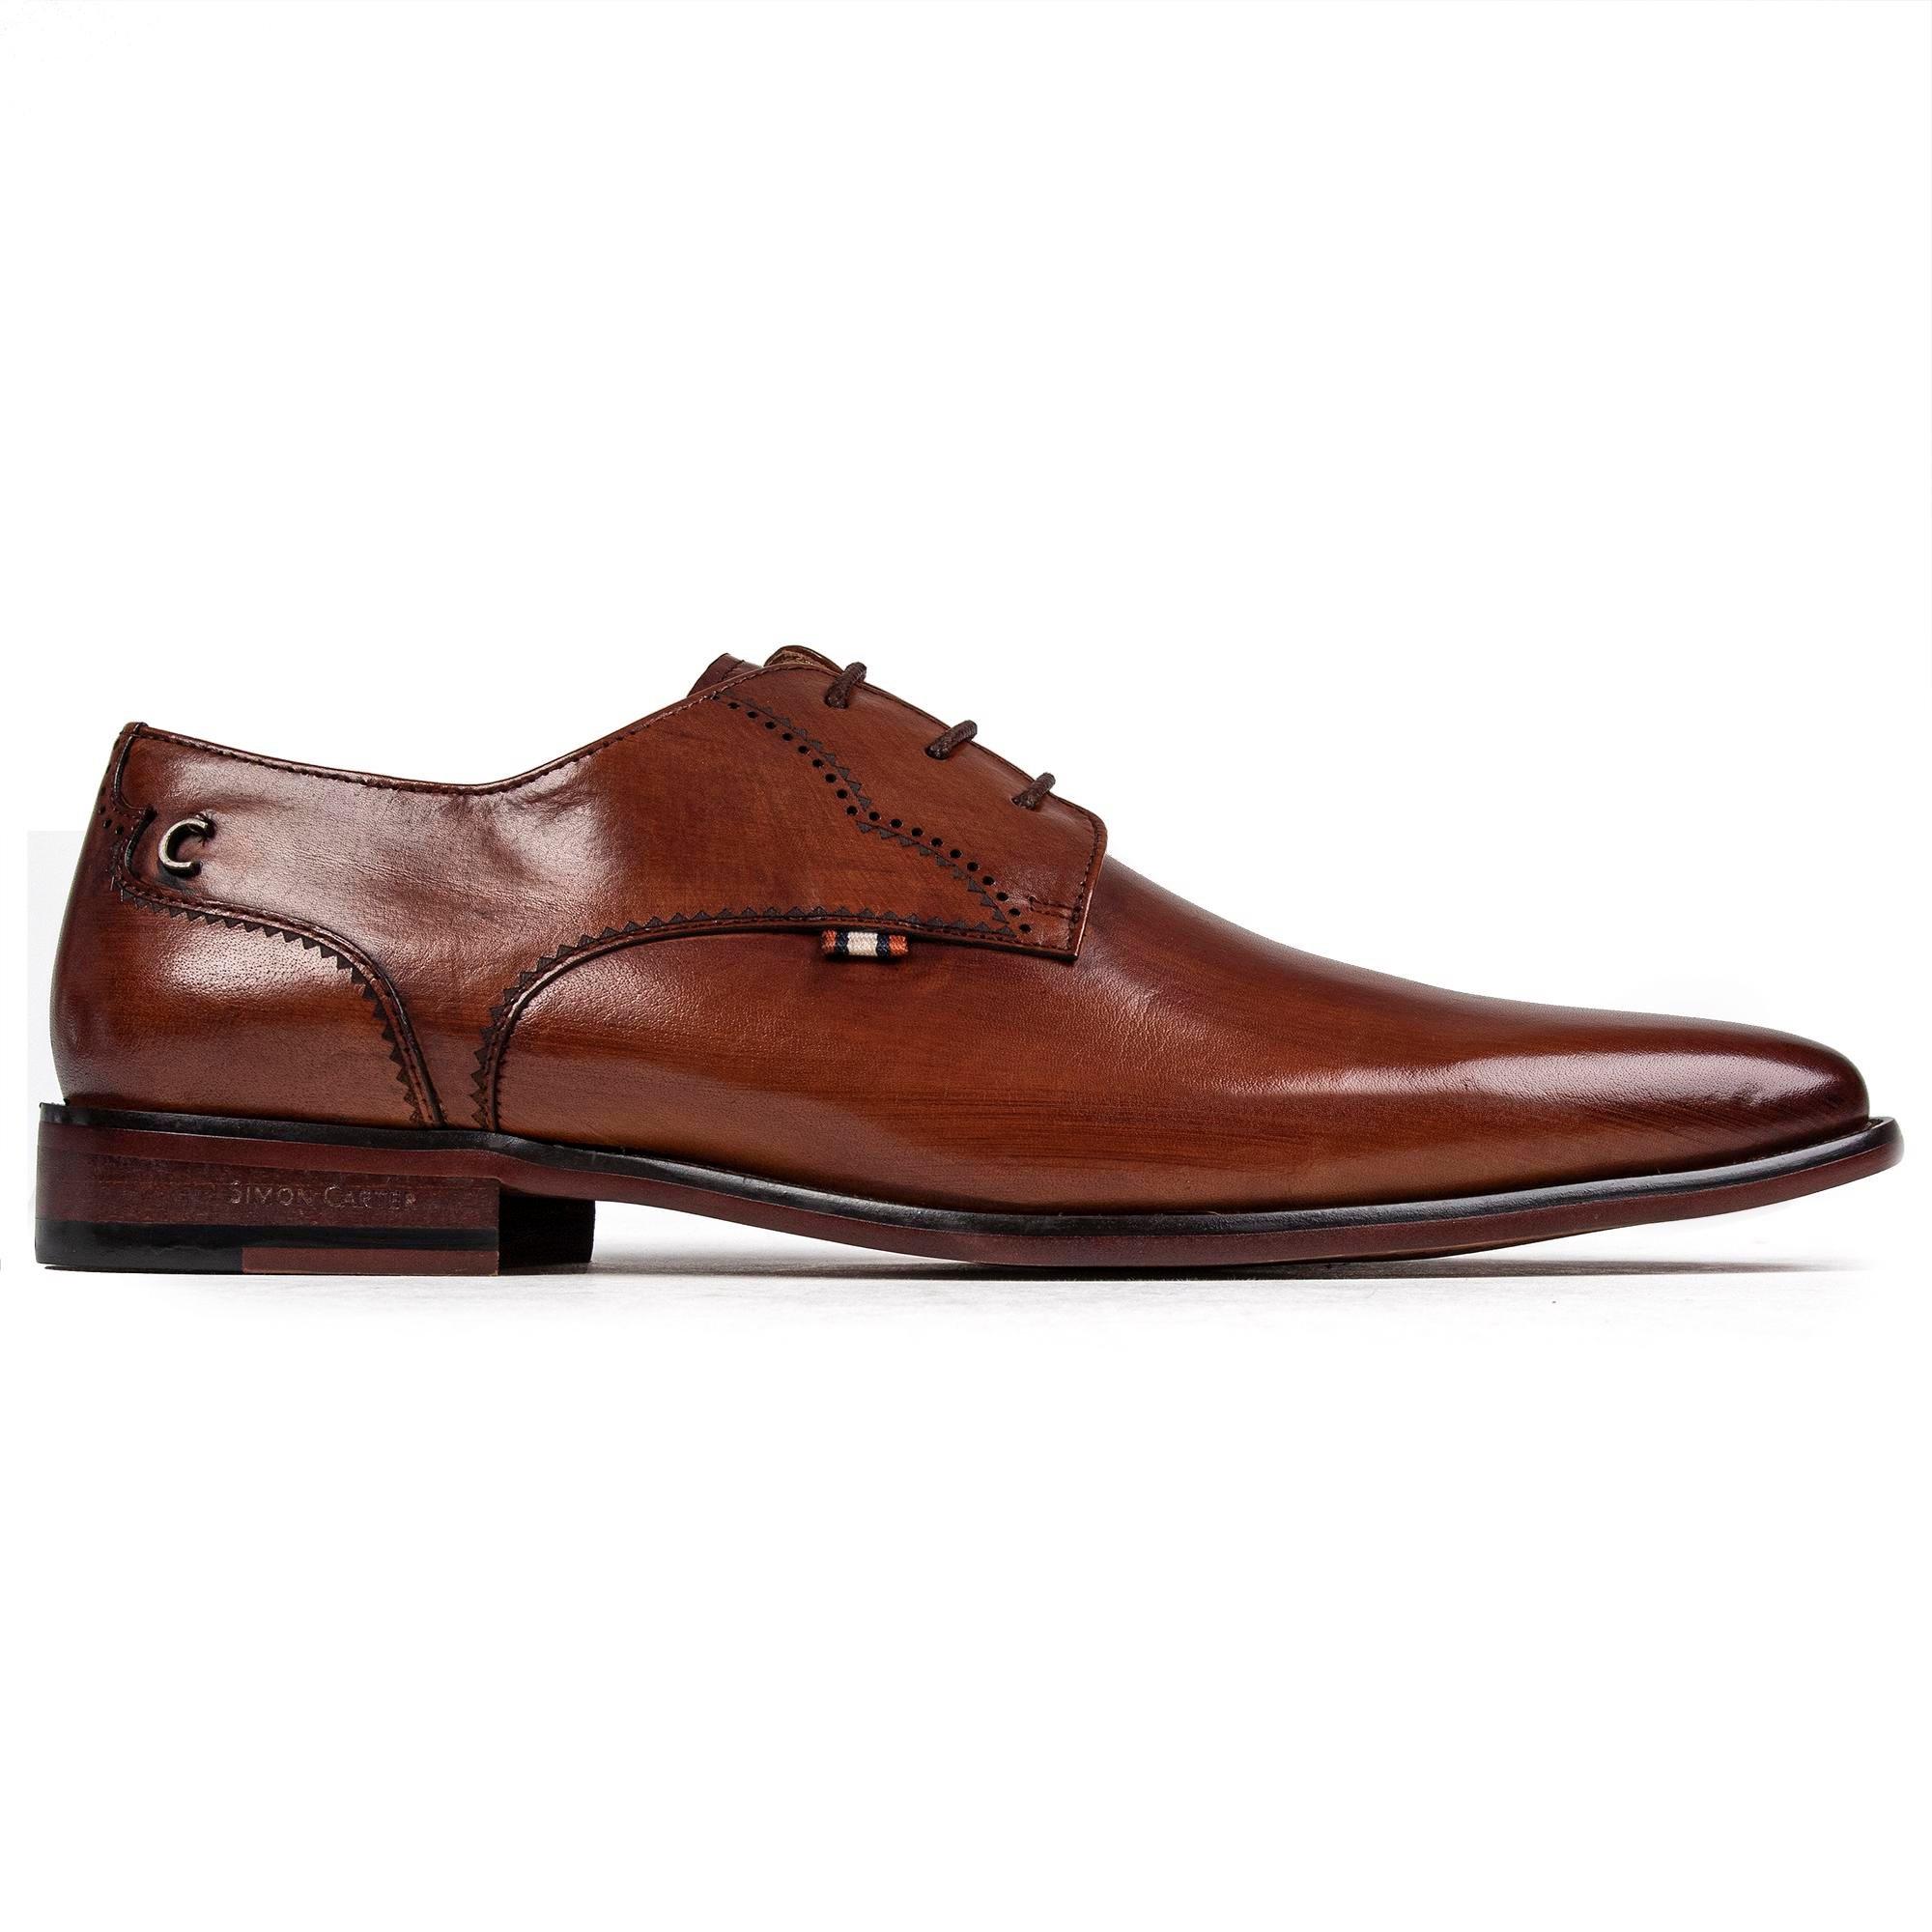 Бассет обувь SIMON CARTER, коричневый мужские классические туфли свадебные оксфорды деловые туфли на шнуровке для офиса лето